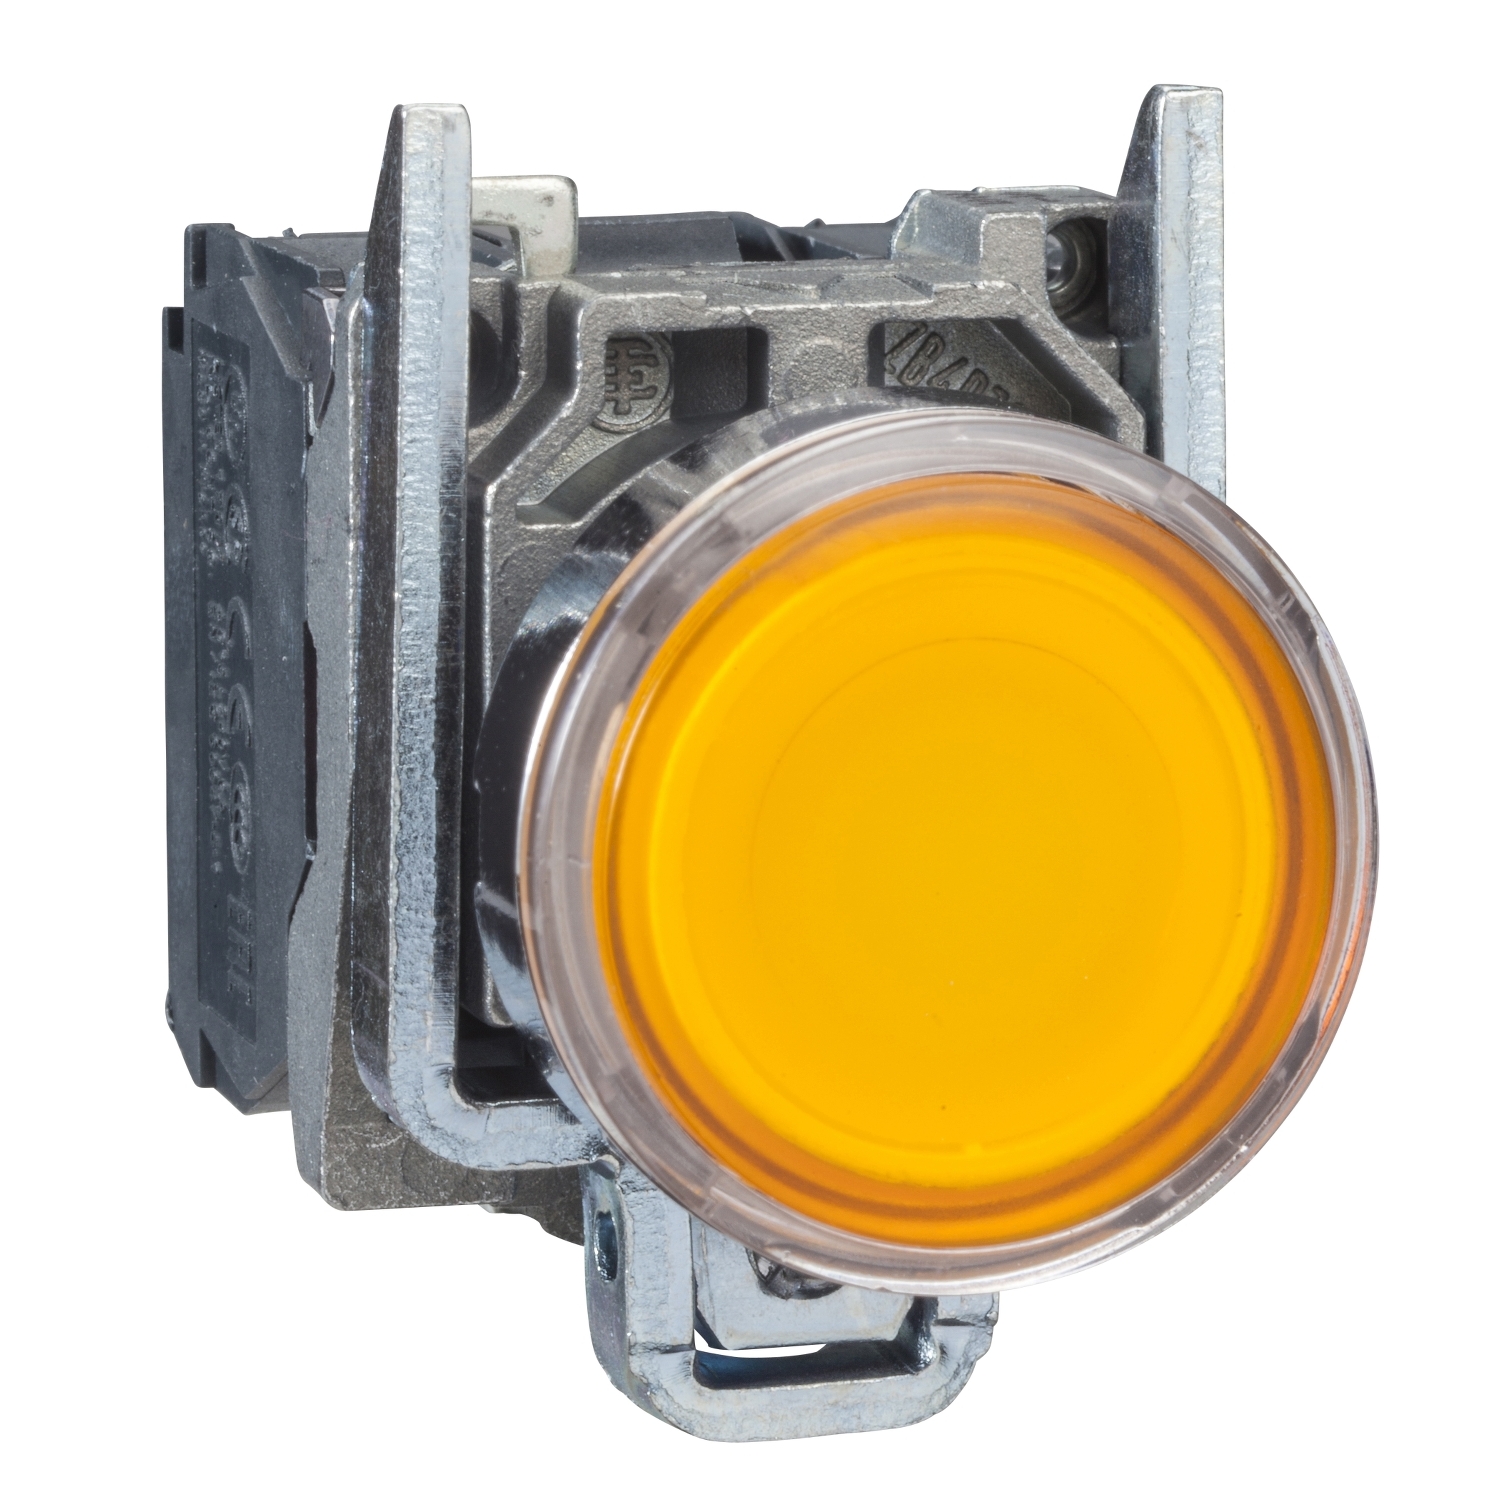 Illuminated push button, Harmony XB4, metal, orange flush, 22mm, universal LED, plain lens, 1NO + 1NC, 24V AC DC